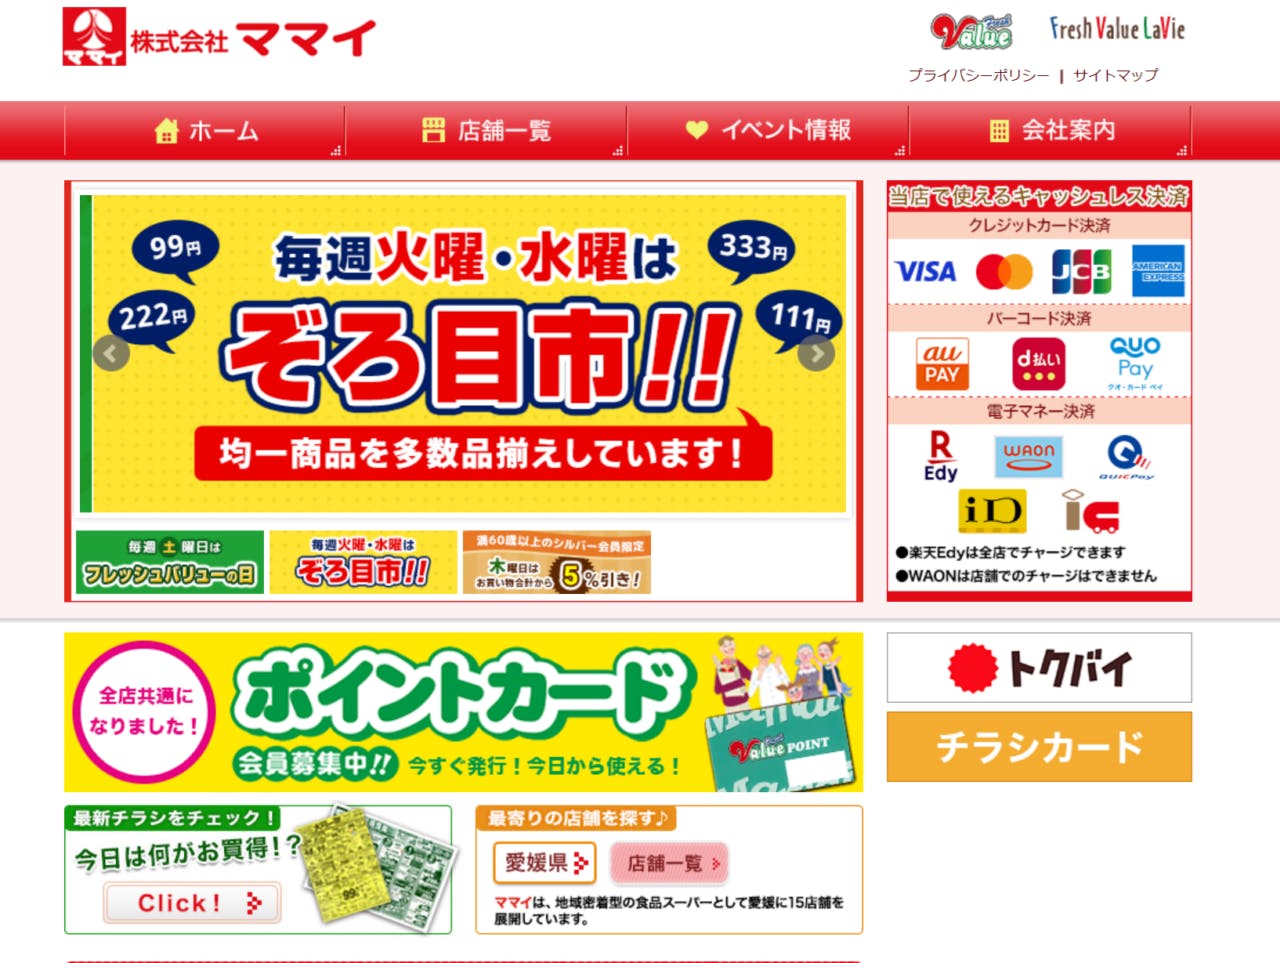 ママイは愛媛県内に15店舗を展開している